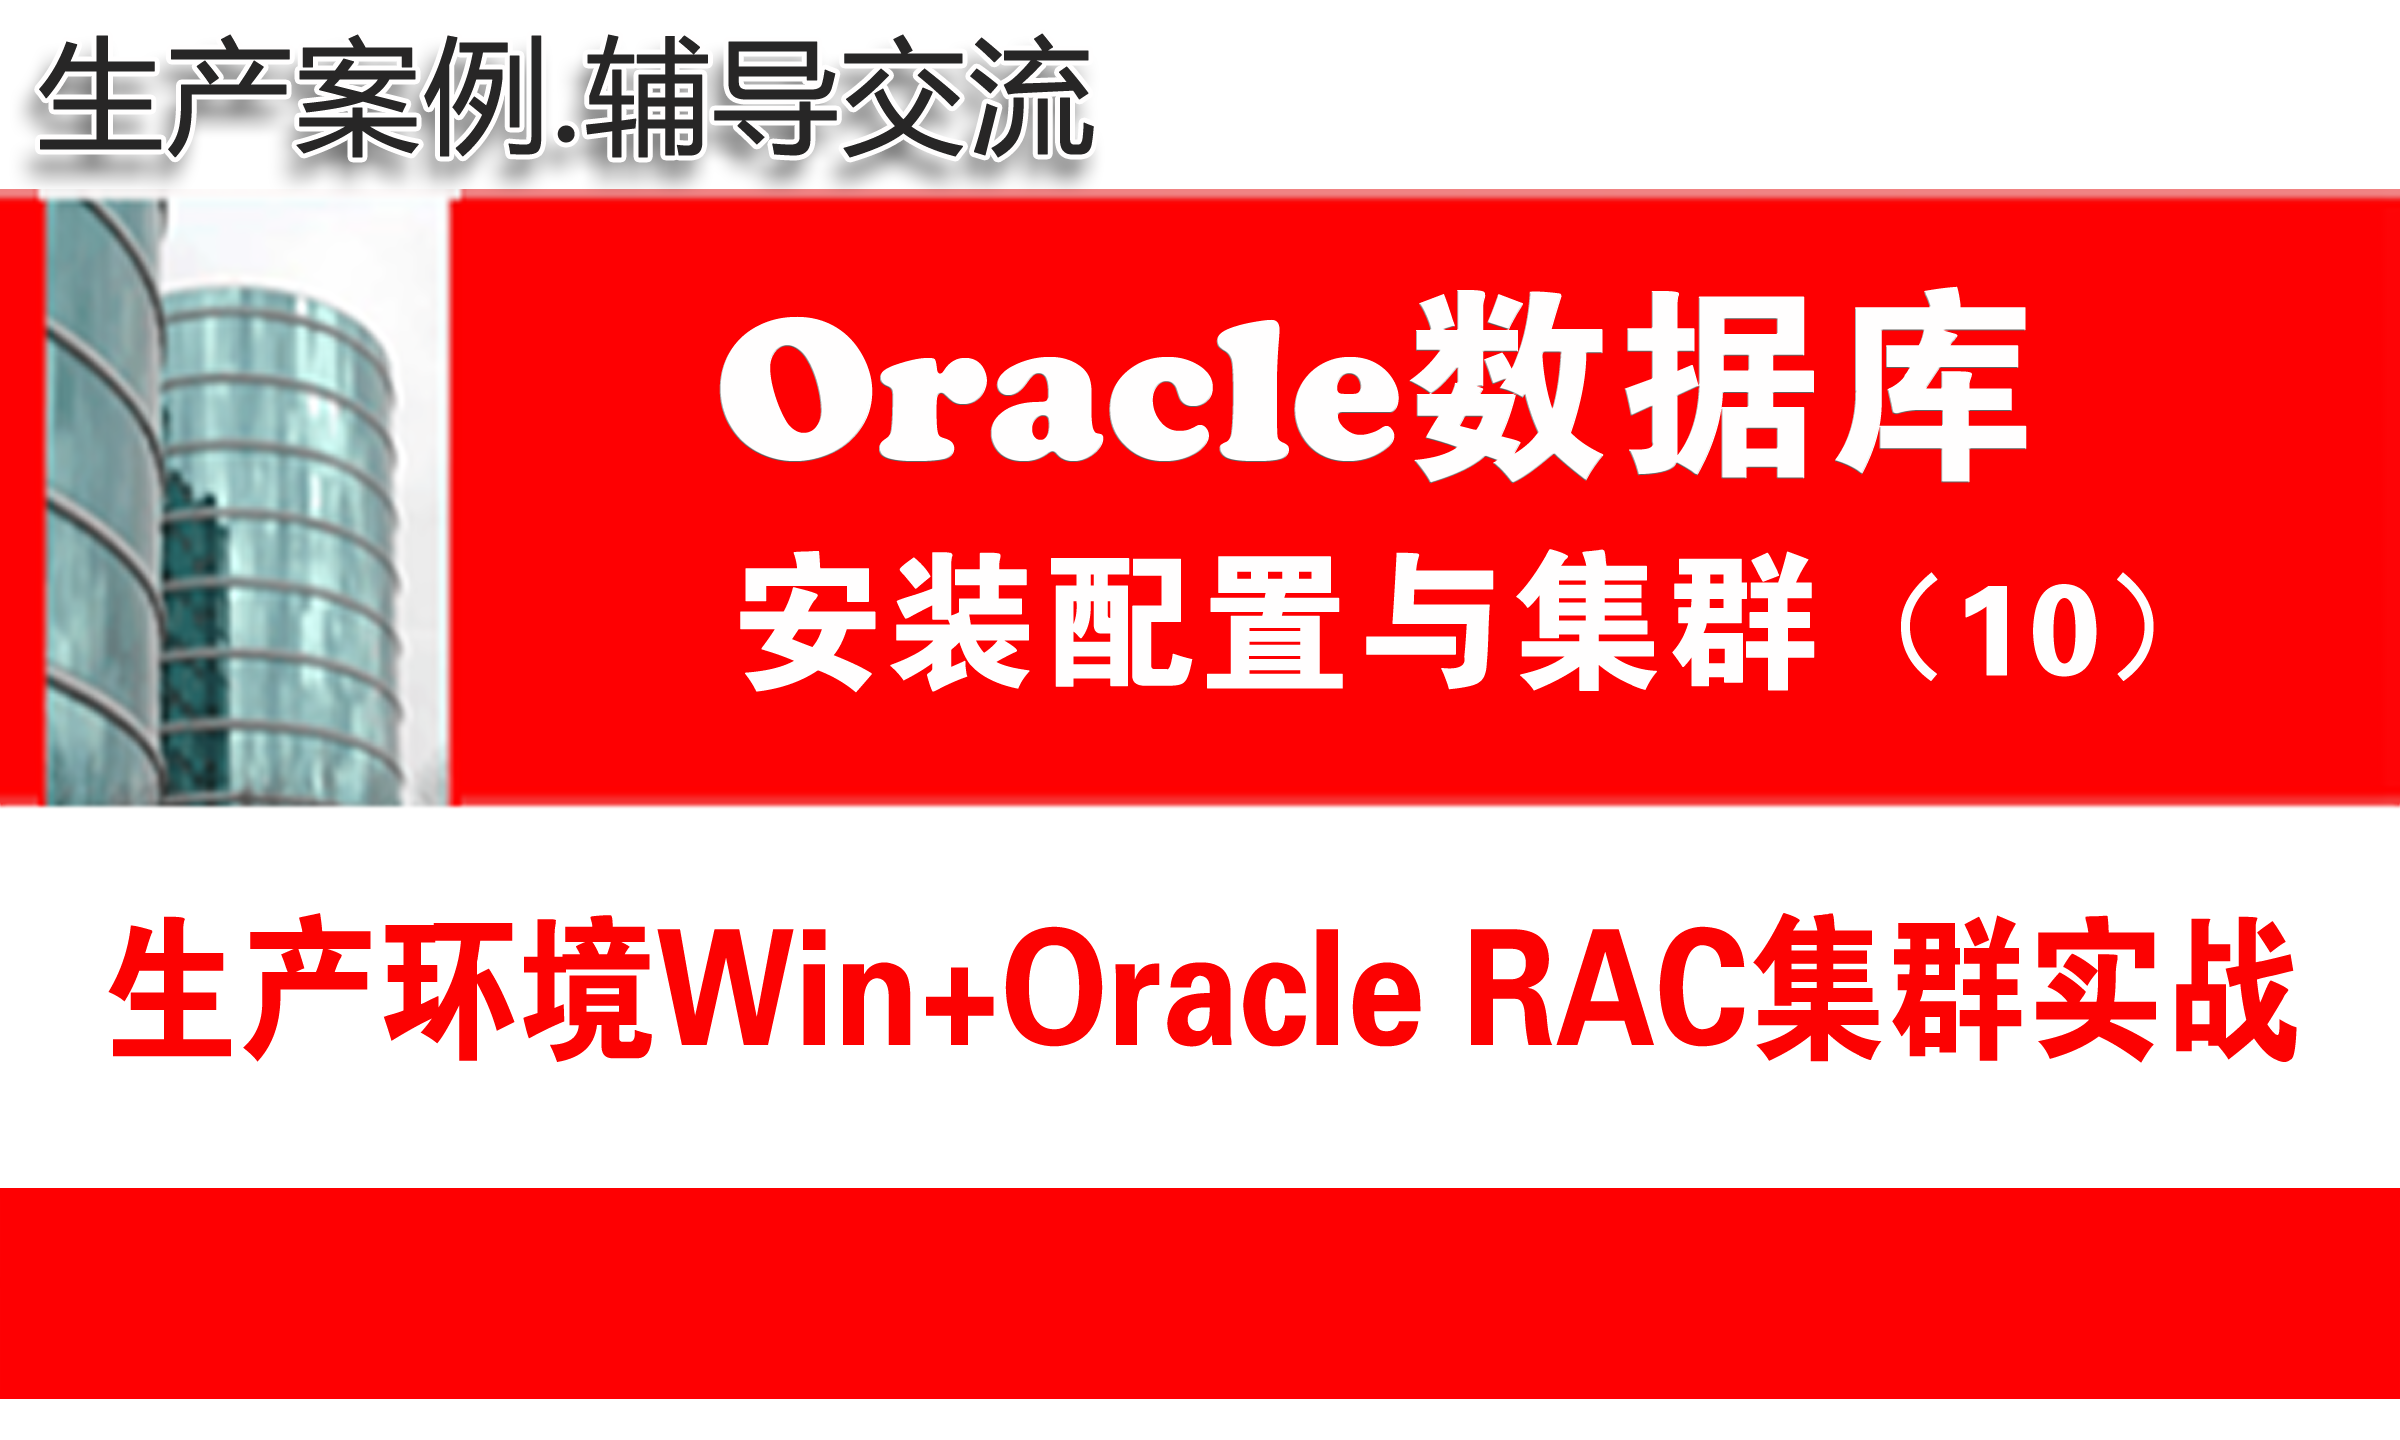 生产环境Win+Oracle11g RAC集群安装配置与管理_Oracle RAC视频教程10